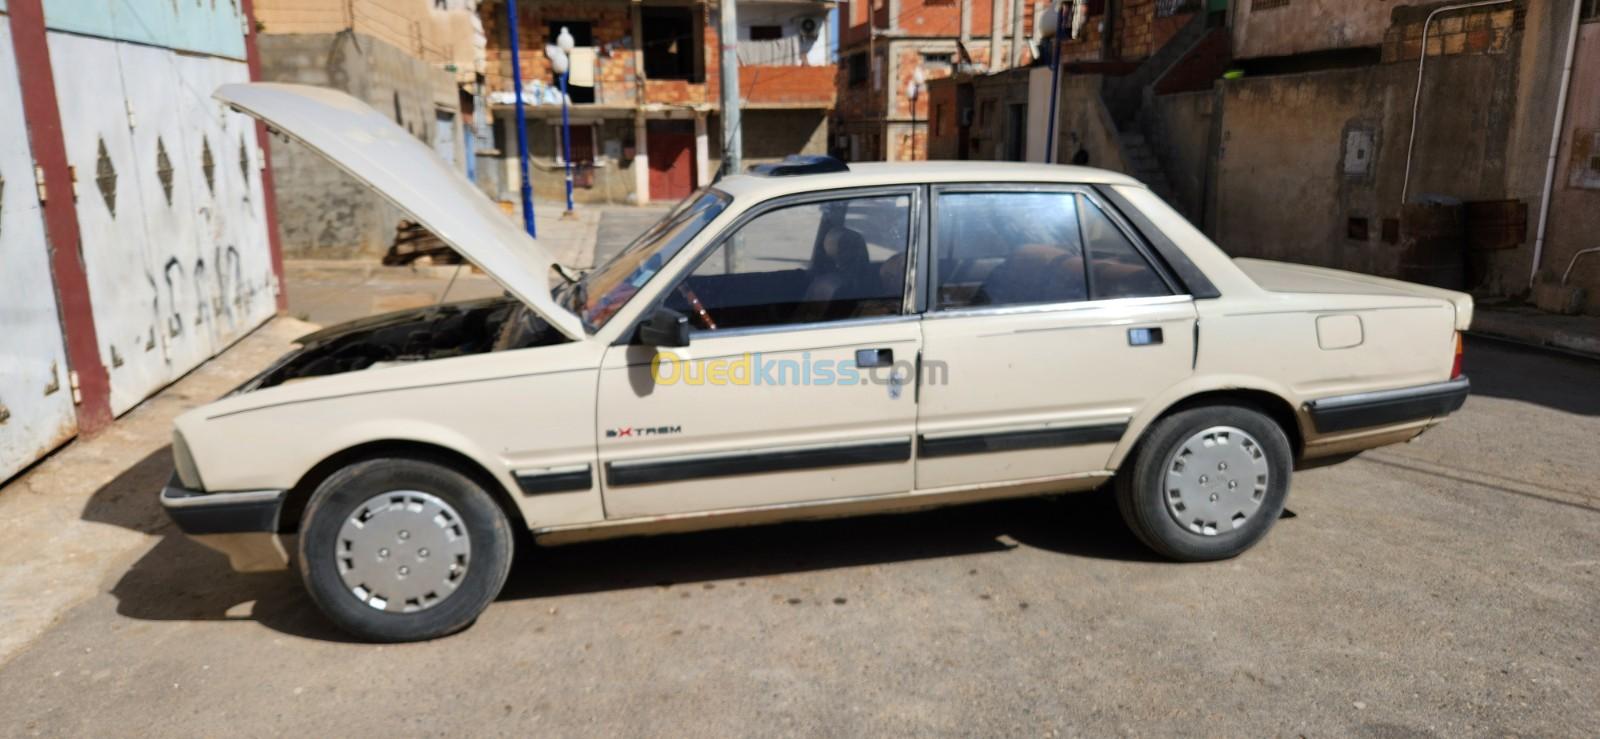 Peugeot 505 1987 Gls